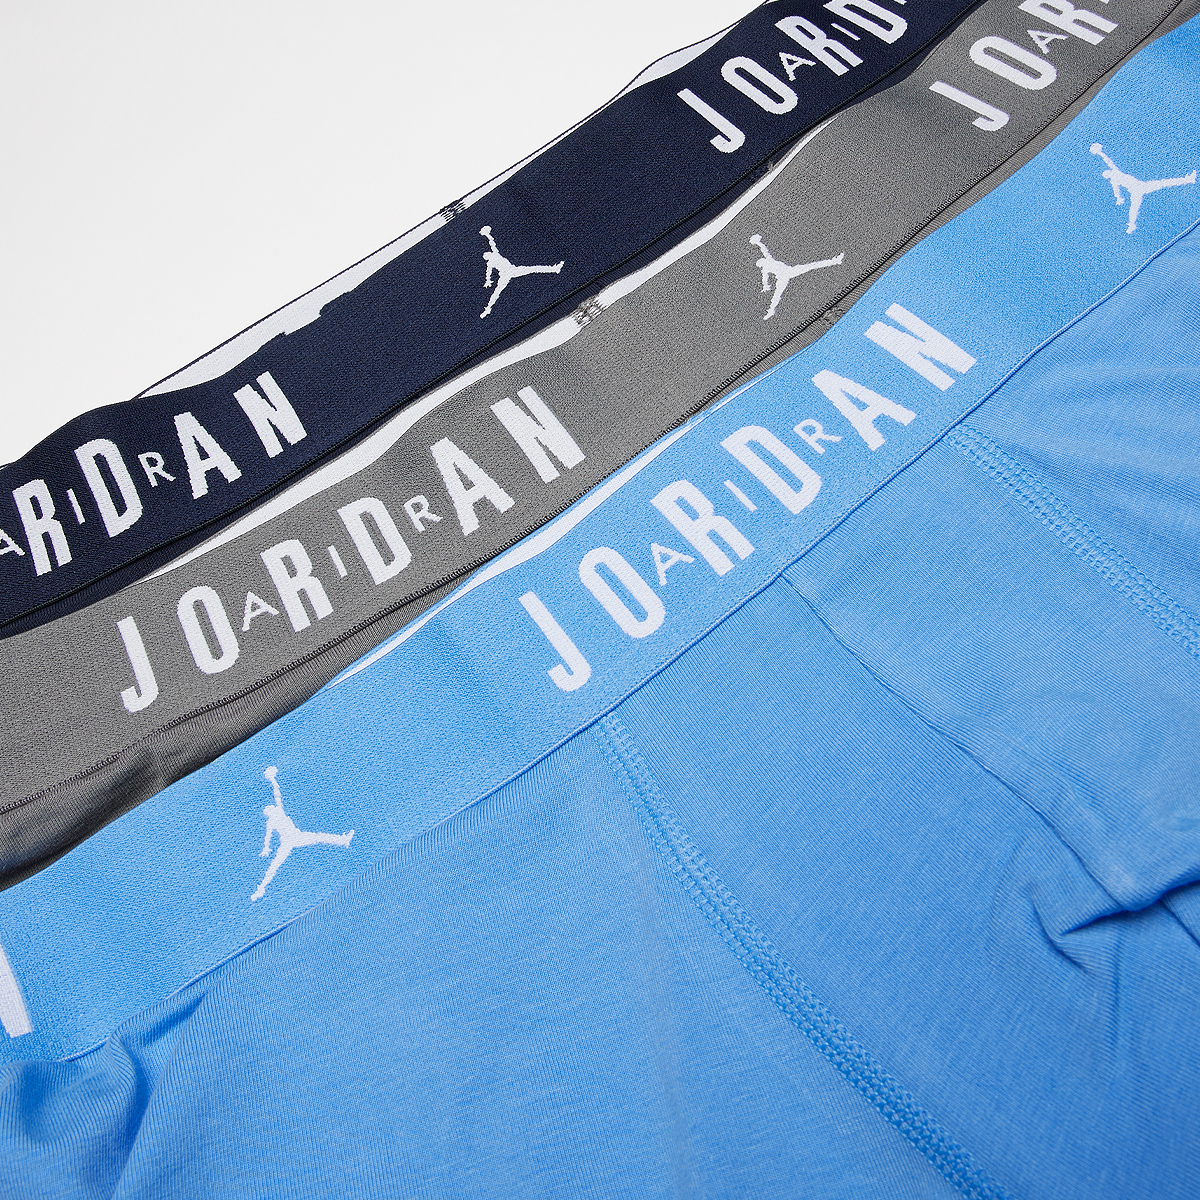 Jordan Flight Cotton Core Boxer Brief (3 Pack) Boxershorts Heren university blue maat: S beschikbare maaten:S M L